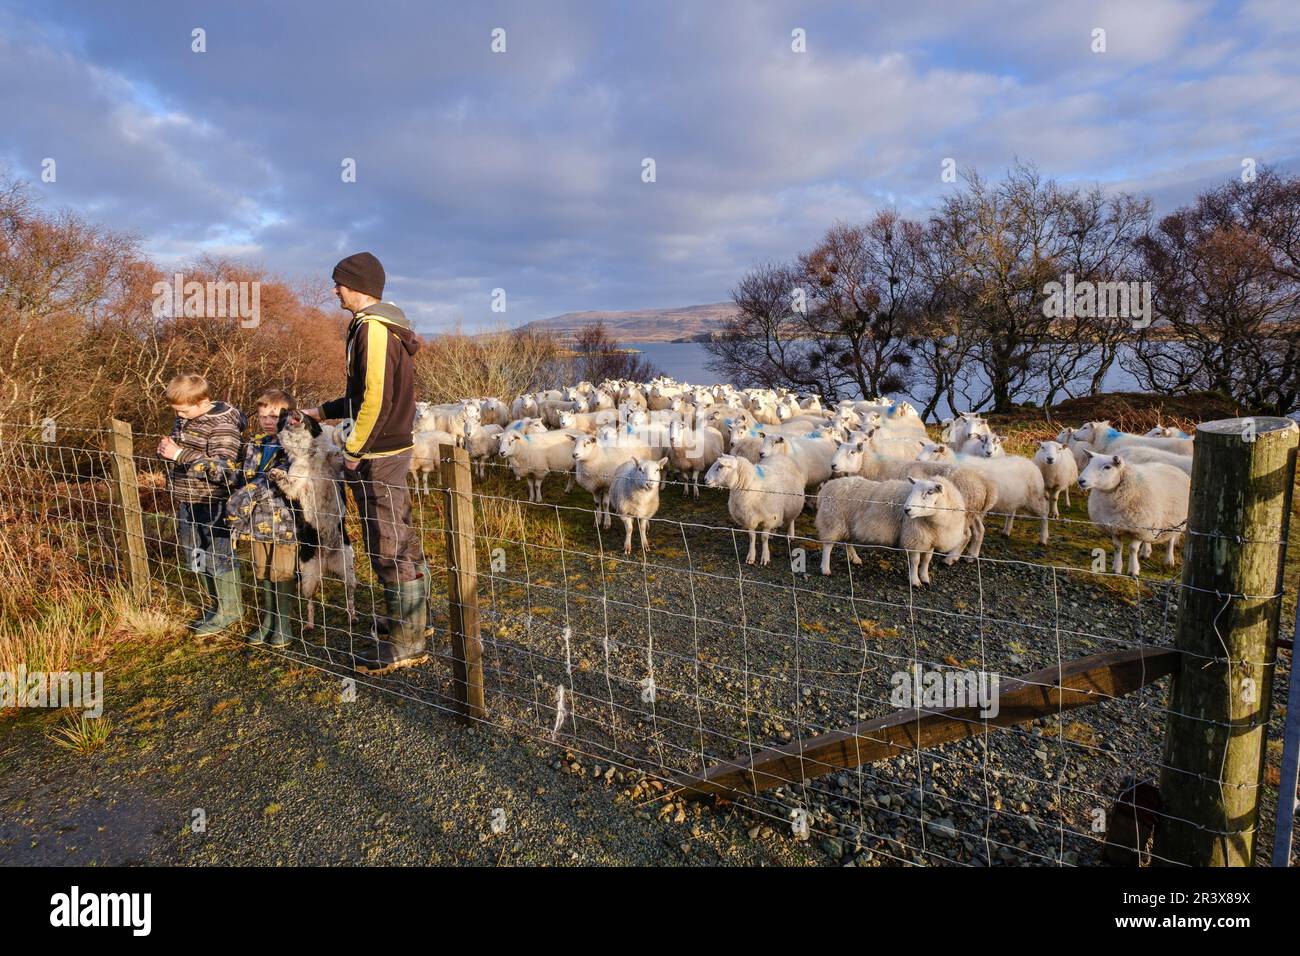 pastor y sus hijos junto a un rebaño de ovejas, Skinidin, Loch Erghallan, isla de Skye, Highlands, Escocia, Reino Unido. Stock Photo